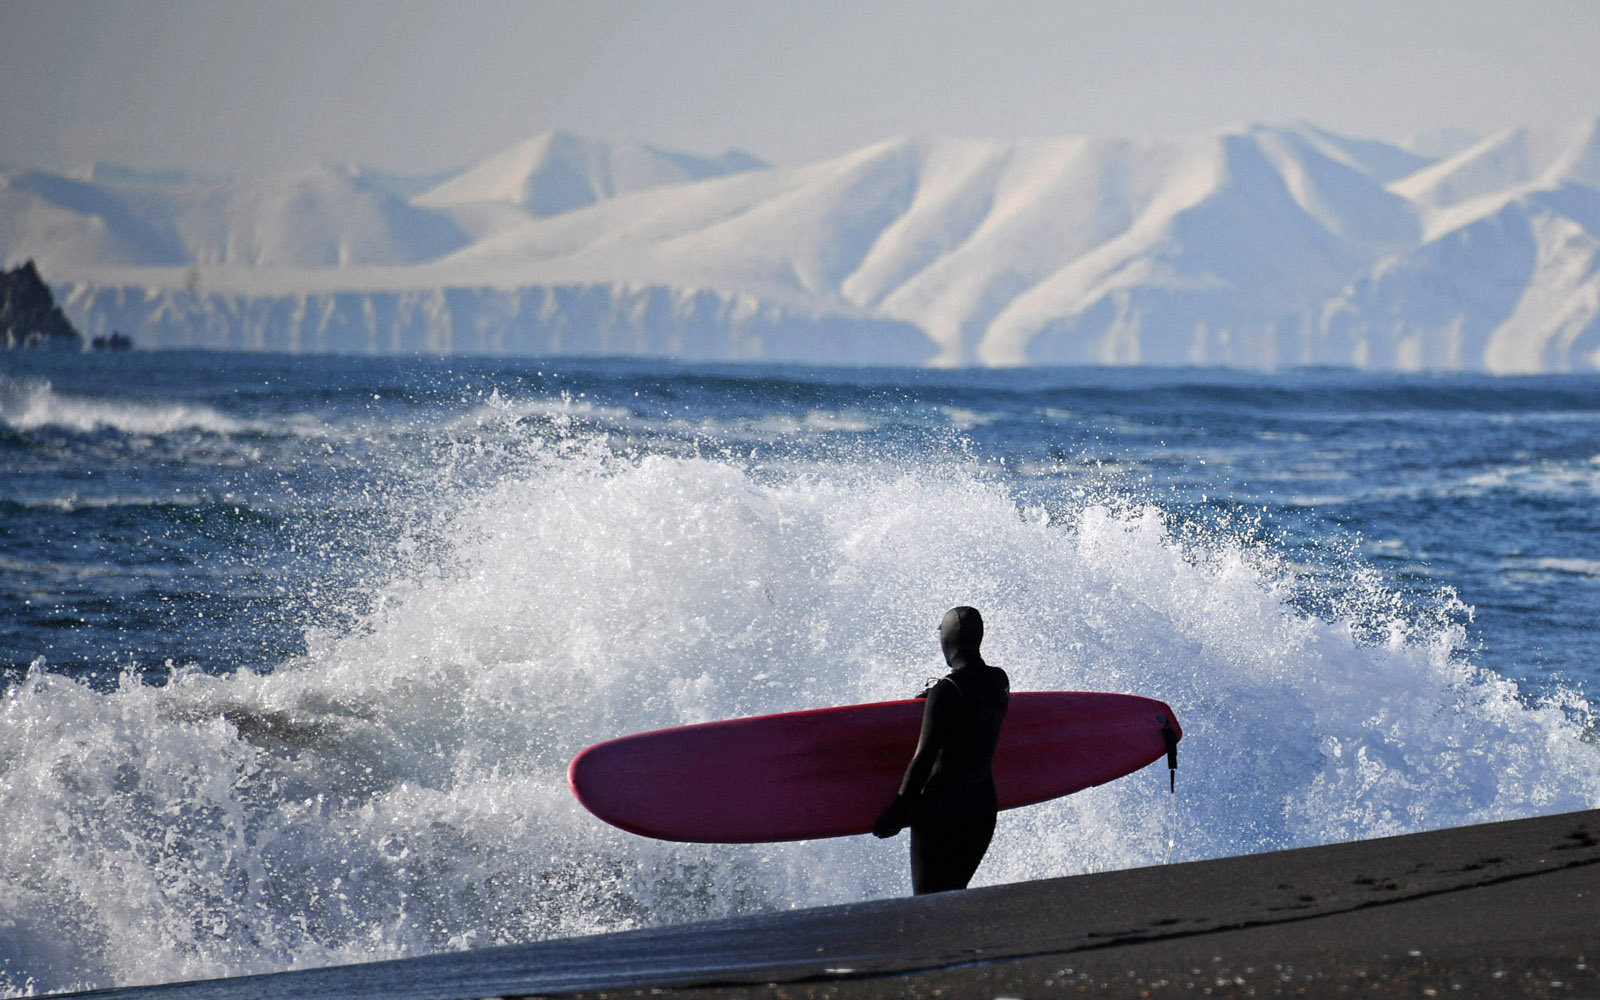 A surfer on the Khalaktyrsky Beach